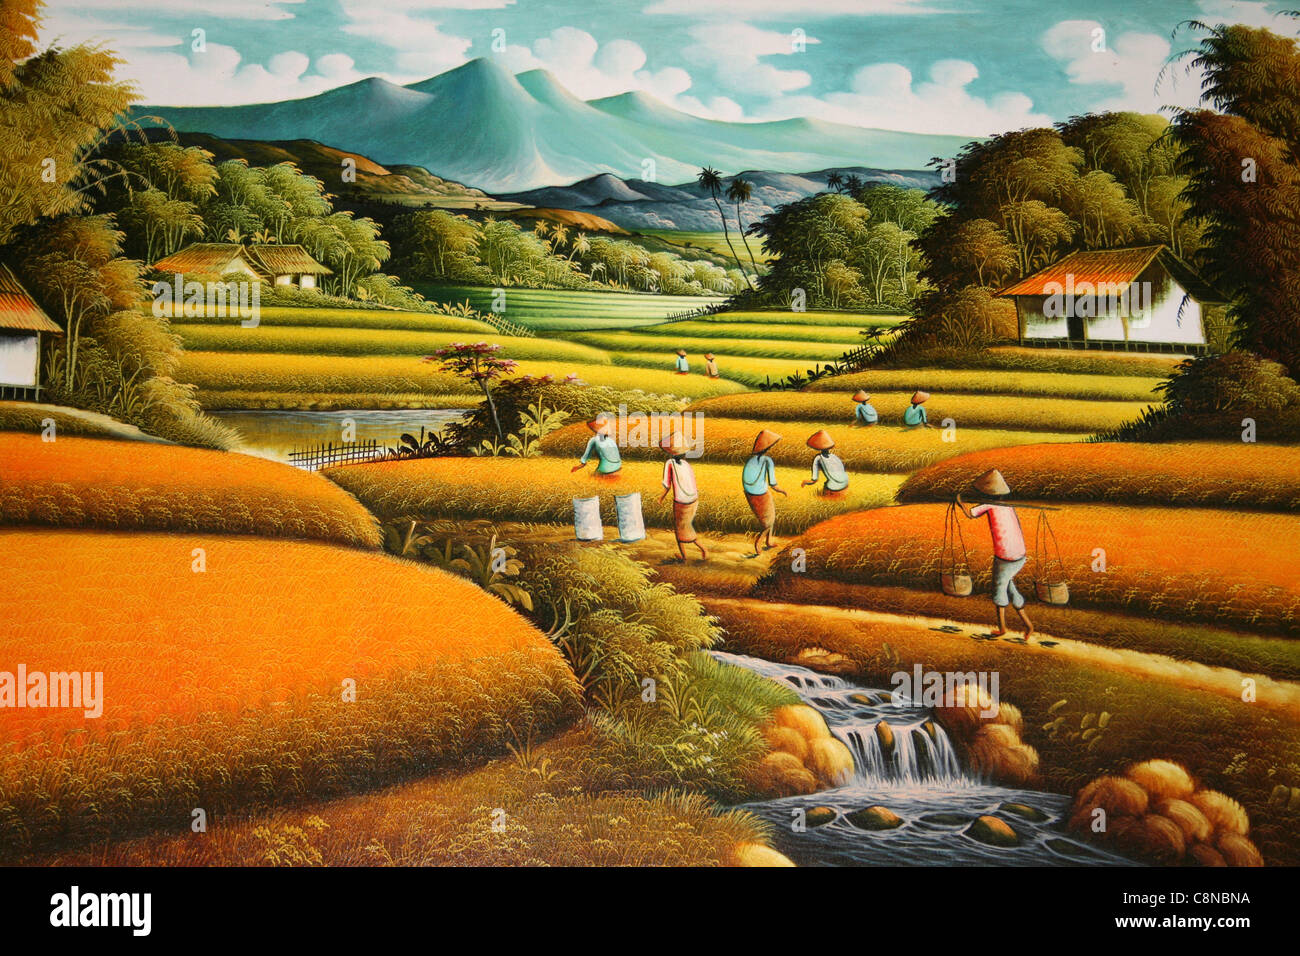 Traditionelle indonesische Malerei der Reisfelder vor dem Hintergrund eines Vulkans Stockfoto